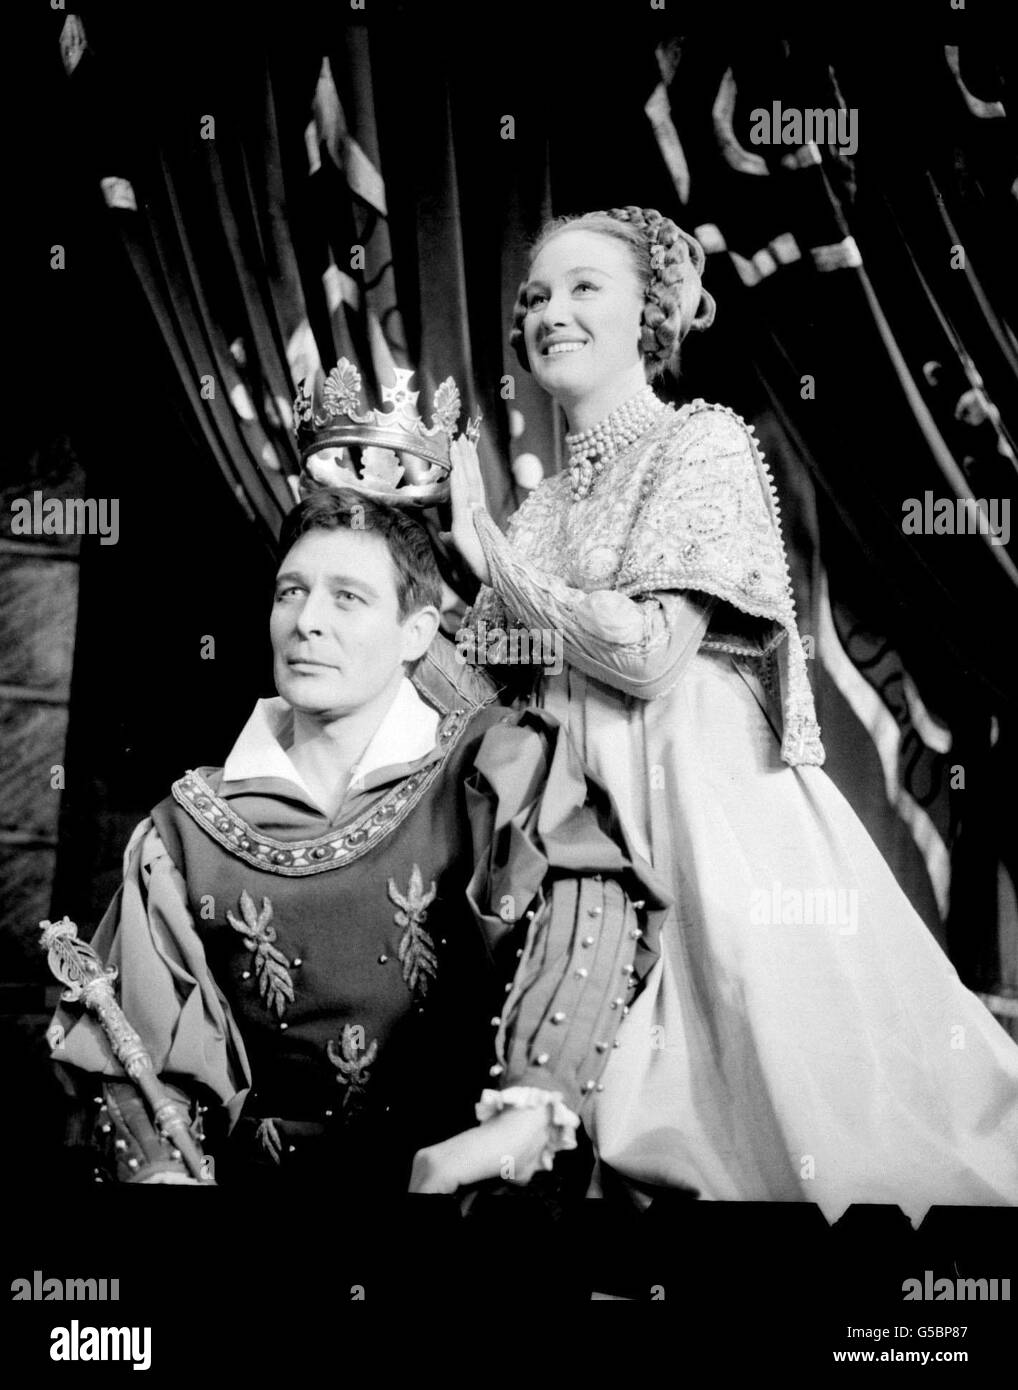 Der Schauspieler Paul Daneman spielt King Arthur im Musical Camelot im Theatre Royal, Drury Lane, London und wird von der Hauptdarstellerin Elizabeth Larner in Queen Guinevere gekrönt. Stockfoto